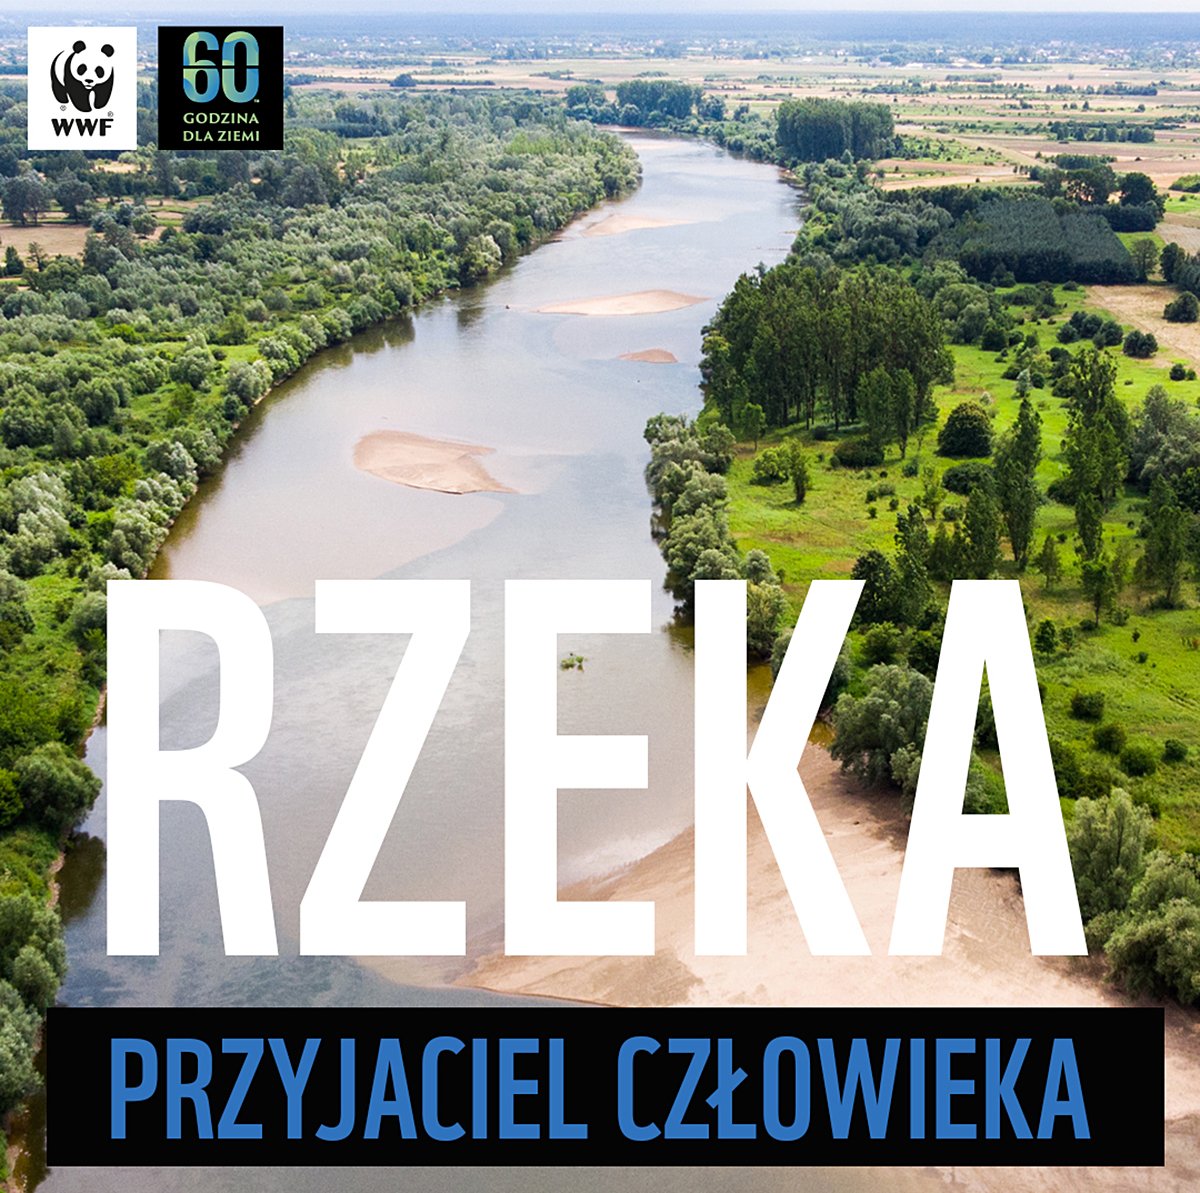 Tegoroczna edycja Godziny dla Ziemi WWF poświęcona jest rzekom. Źródło: WWF Polska